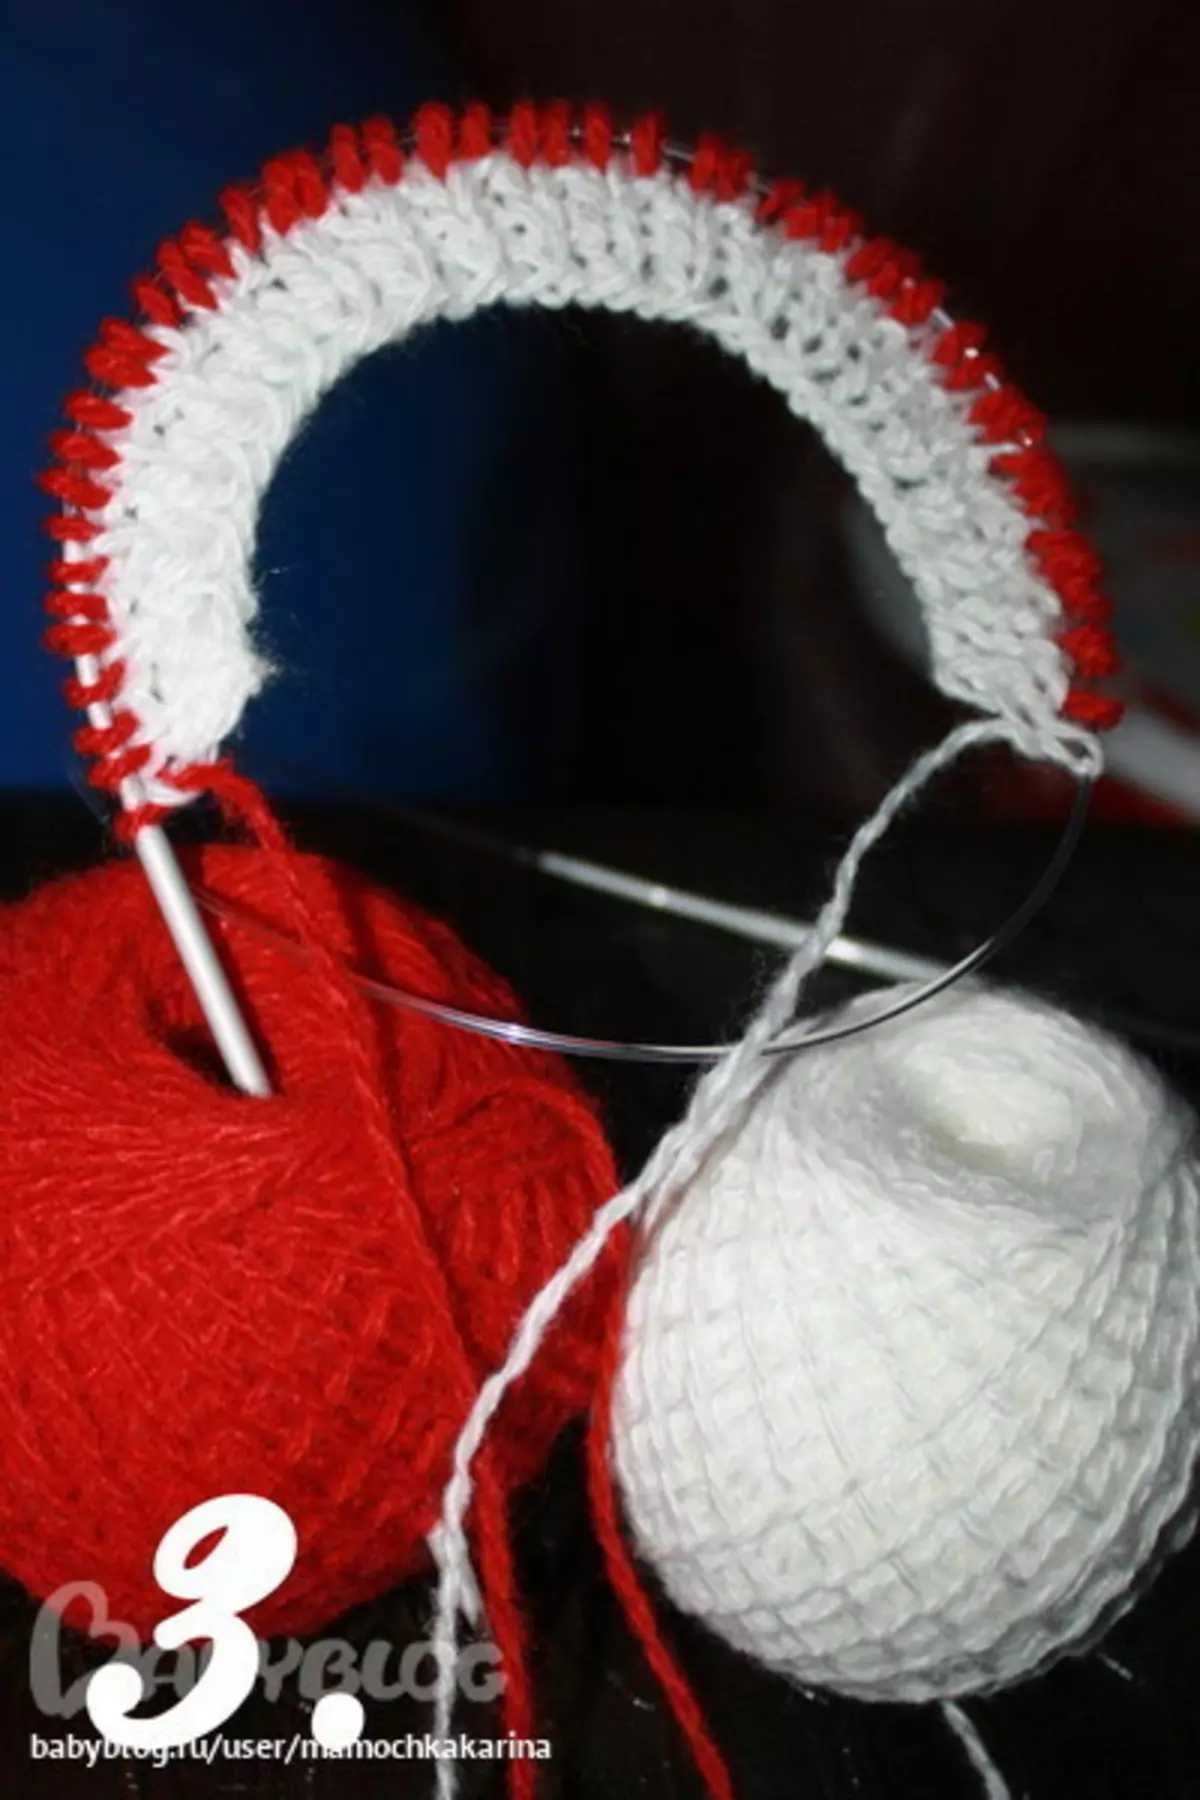 बुनाई सुईको साथ केटीको लागि बुनिएको स्वेटर: केटी 2 बर्षको लागि विकल्पहरू, खोल्ने काम ब्लाउज आफैंमा गर्नुहोस्